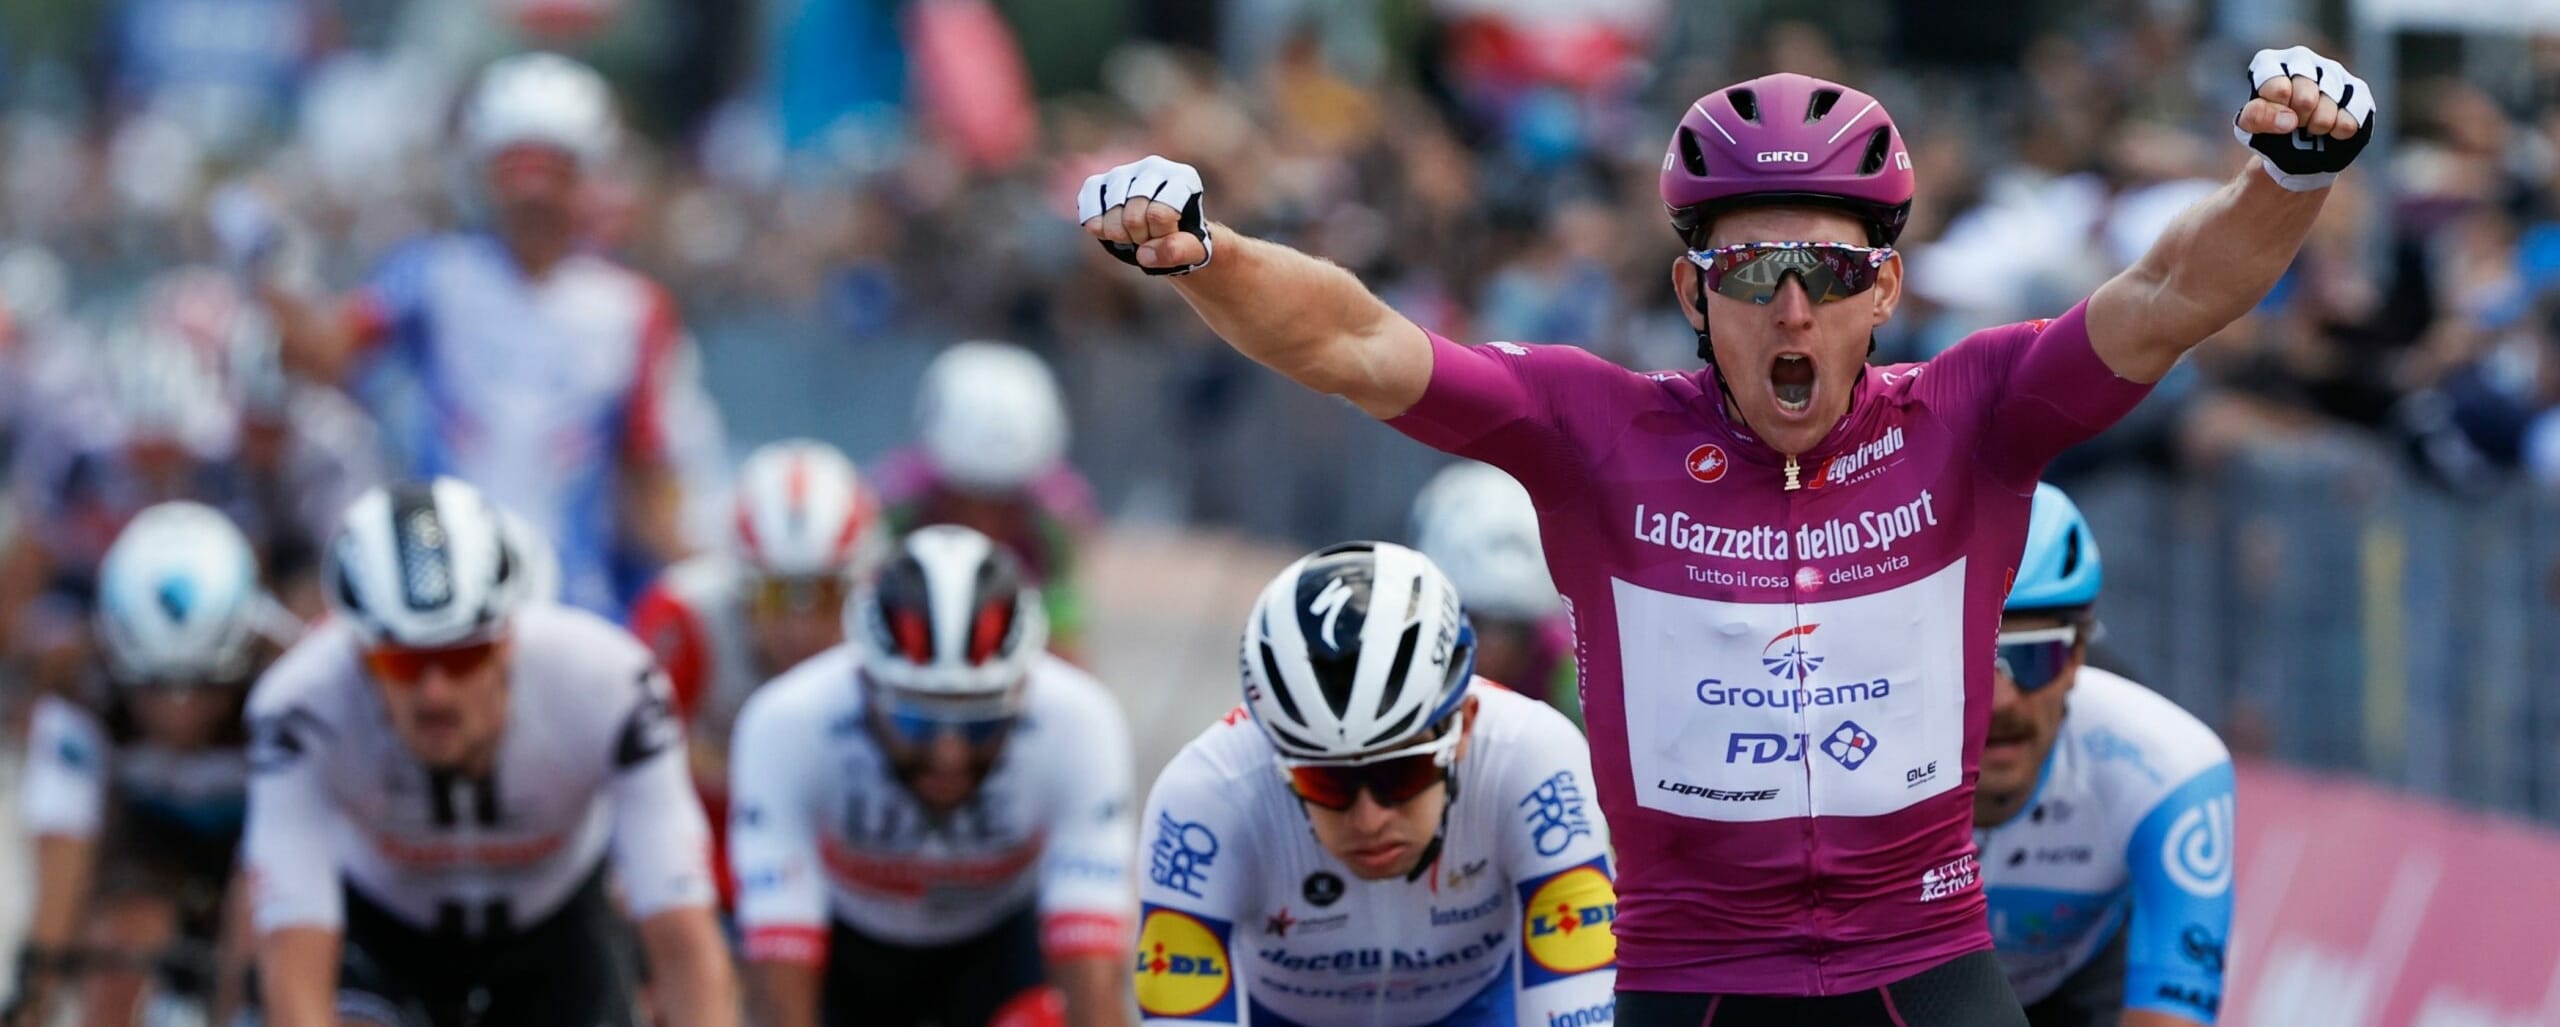 Giro d'Italia 2021: tutto sulle 21 tappe, i favoriti e le sorprese più attendibili